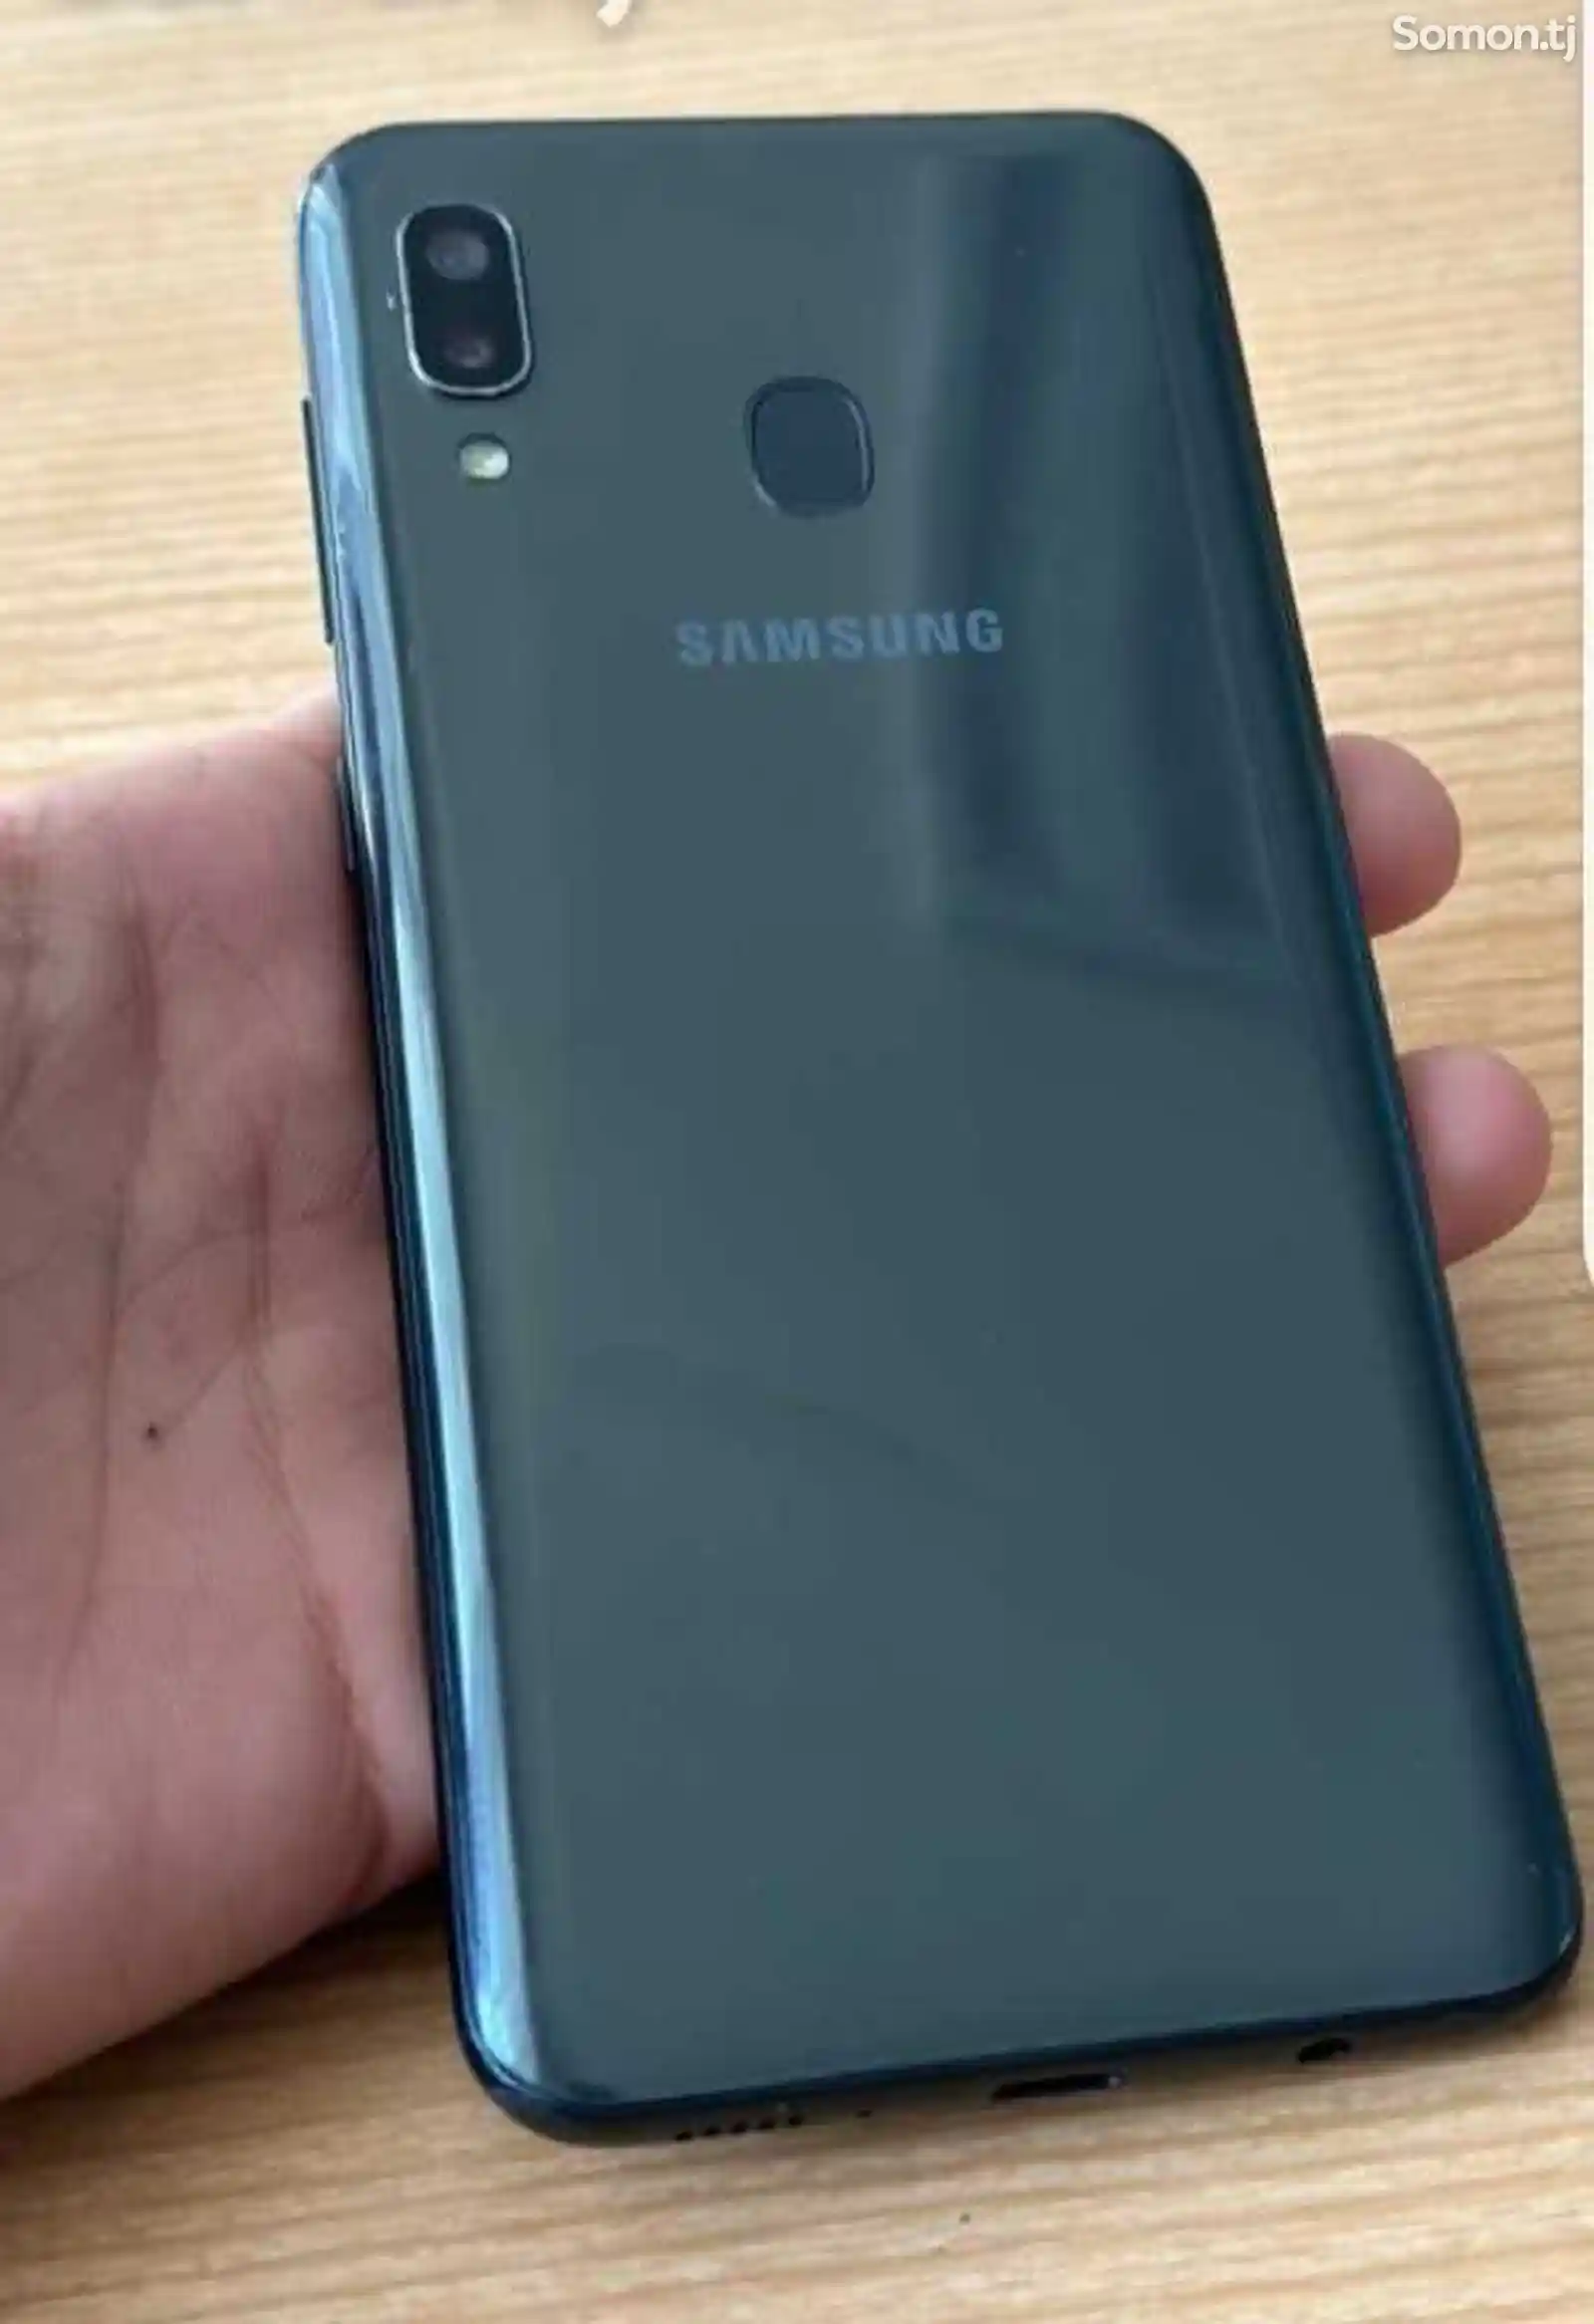 Samsung Galaxy A30 4/32gb